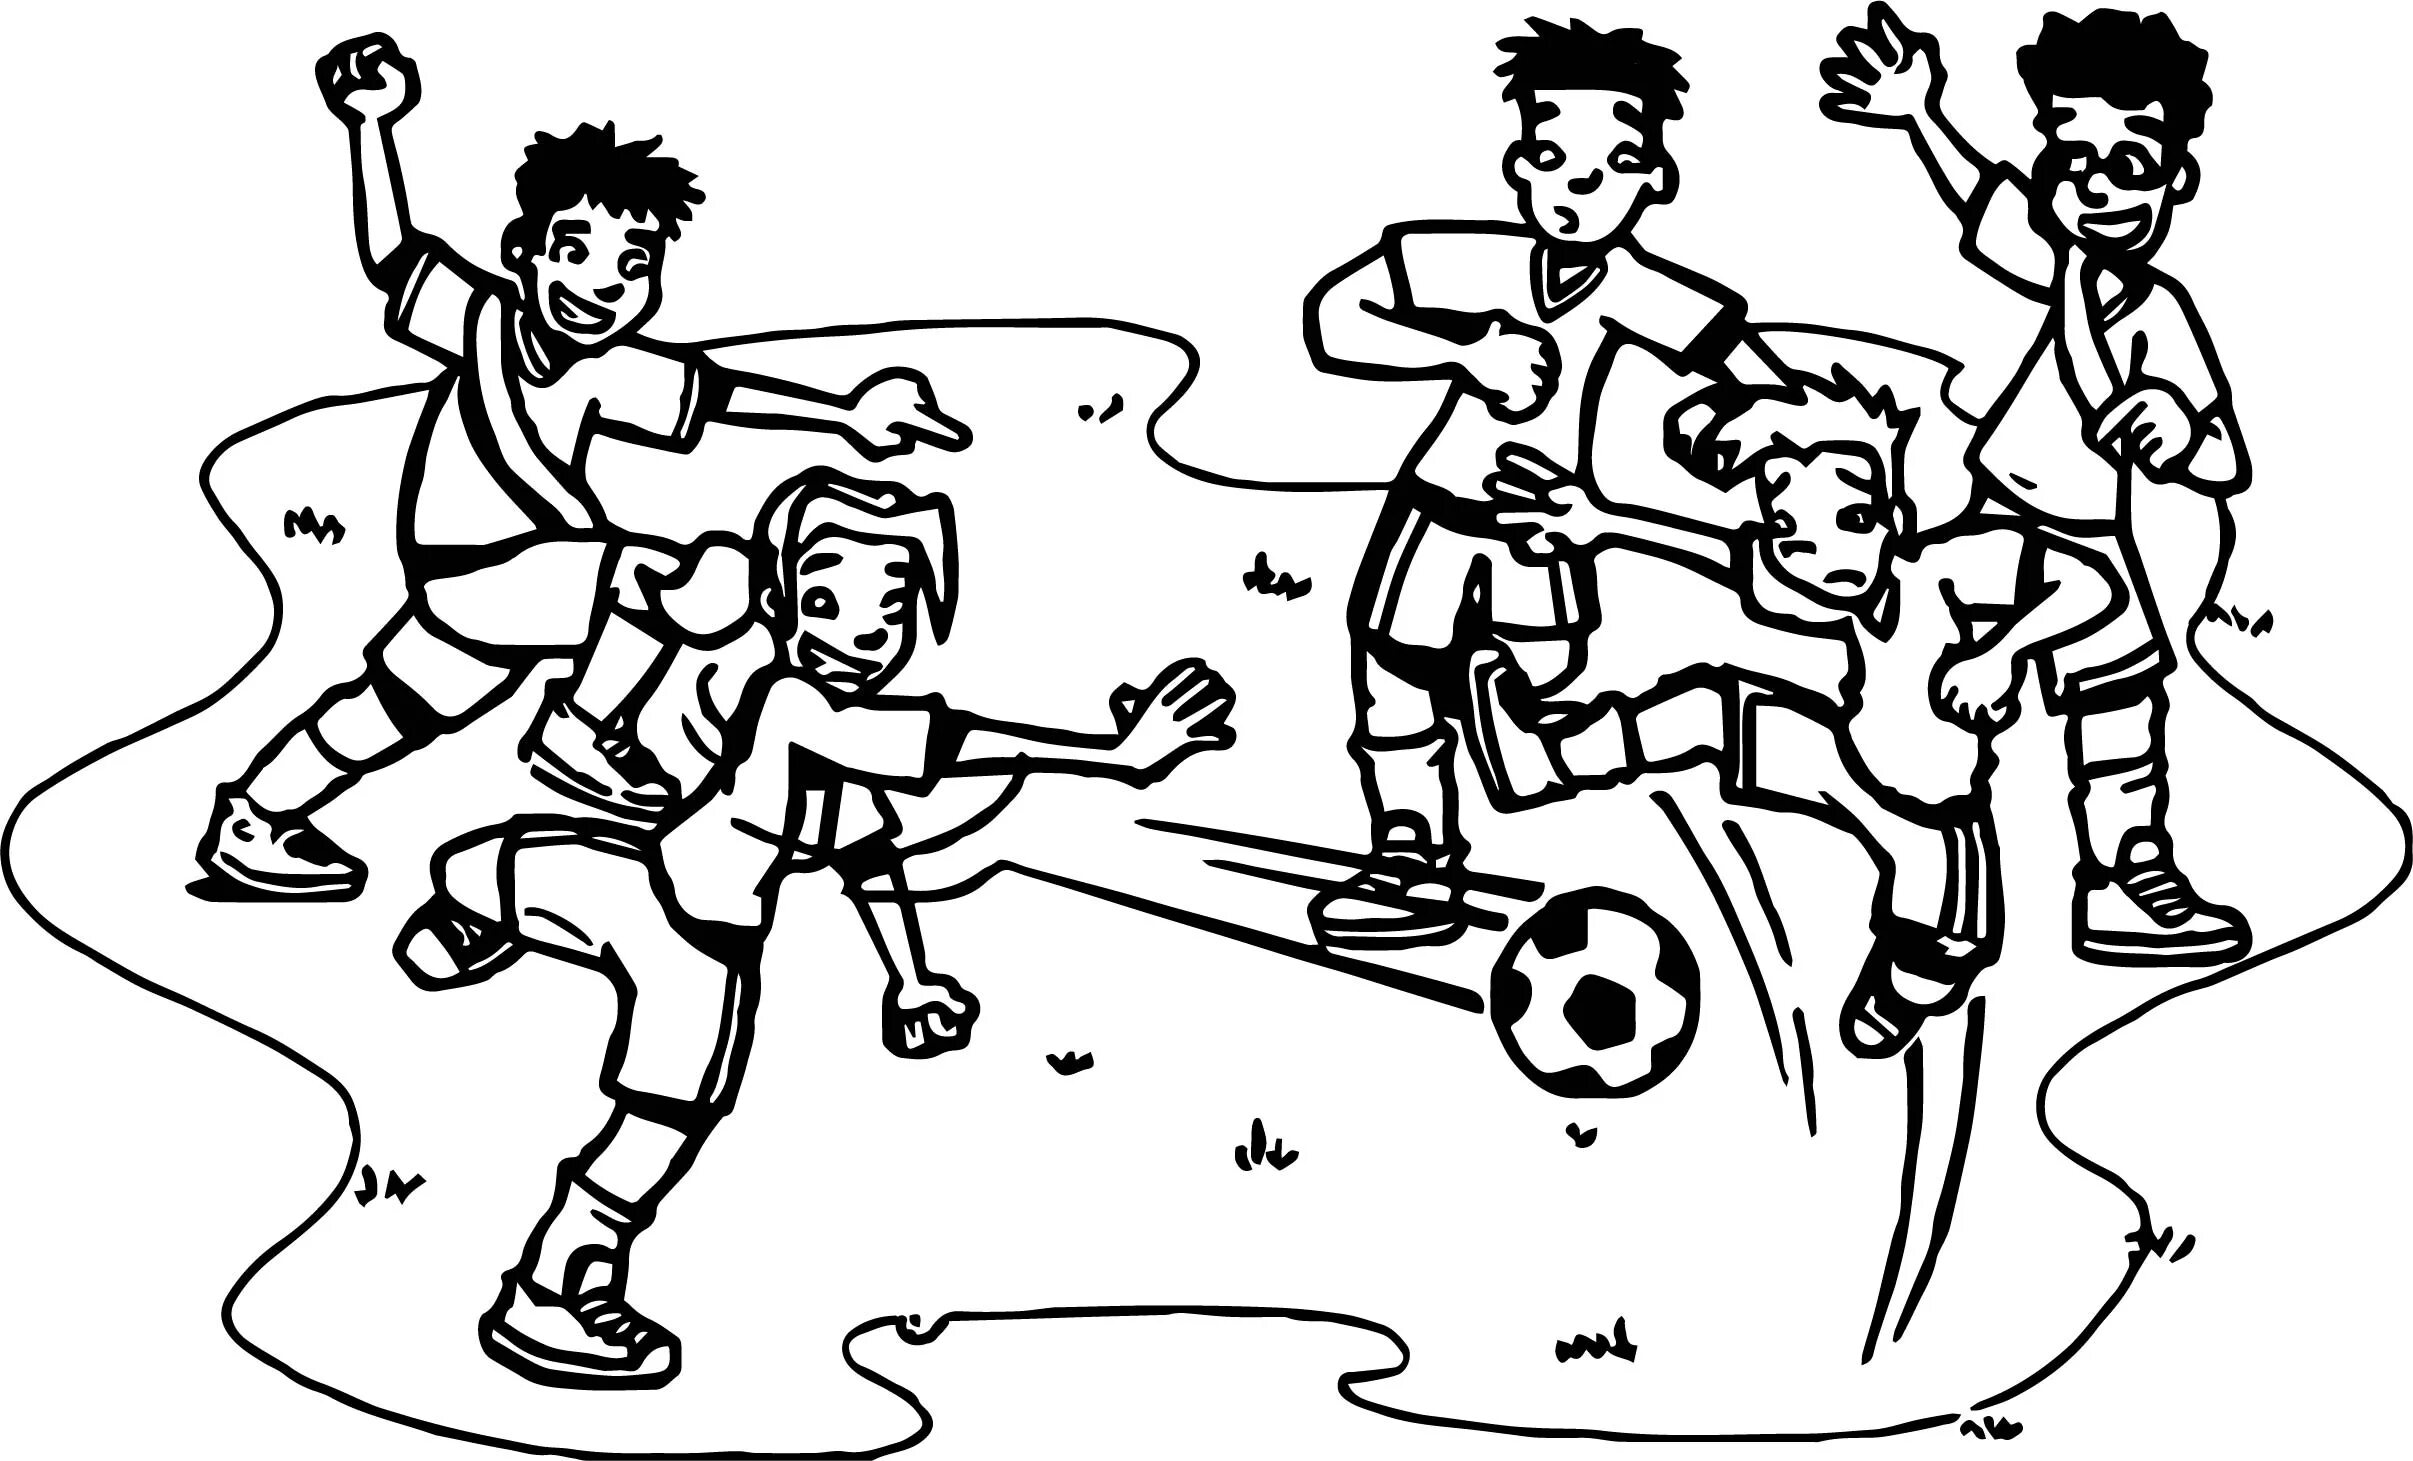 Играй рисовать хочу. Раскраска футбол. Рисунок на тему футбол. Футбол раскраска для детей. Раскраска AEH,jkfдля детей.